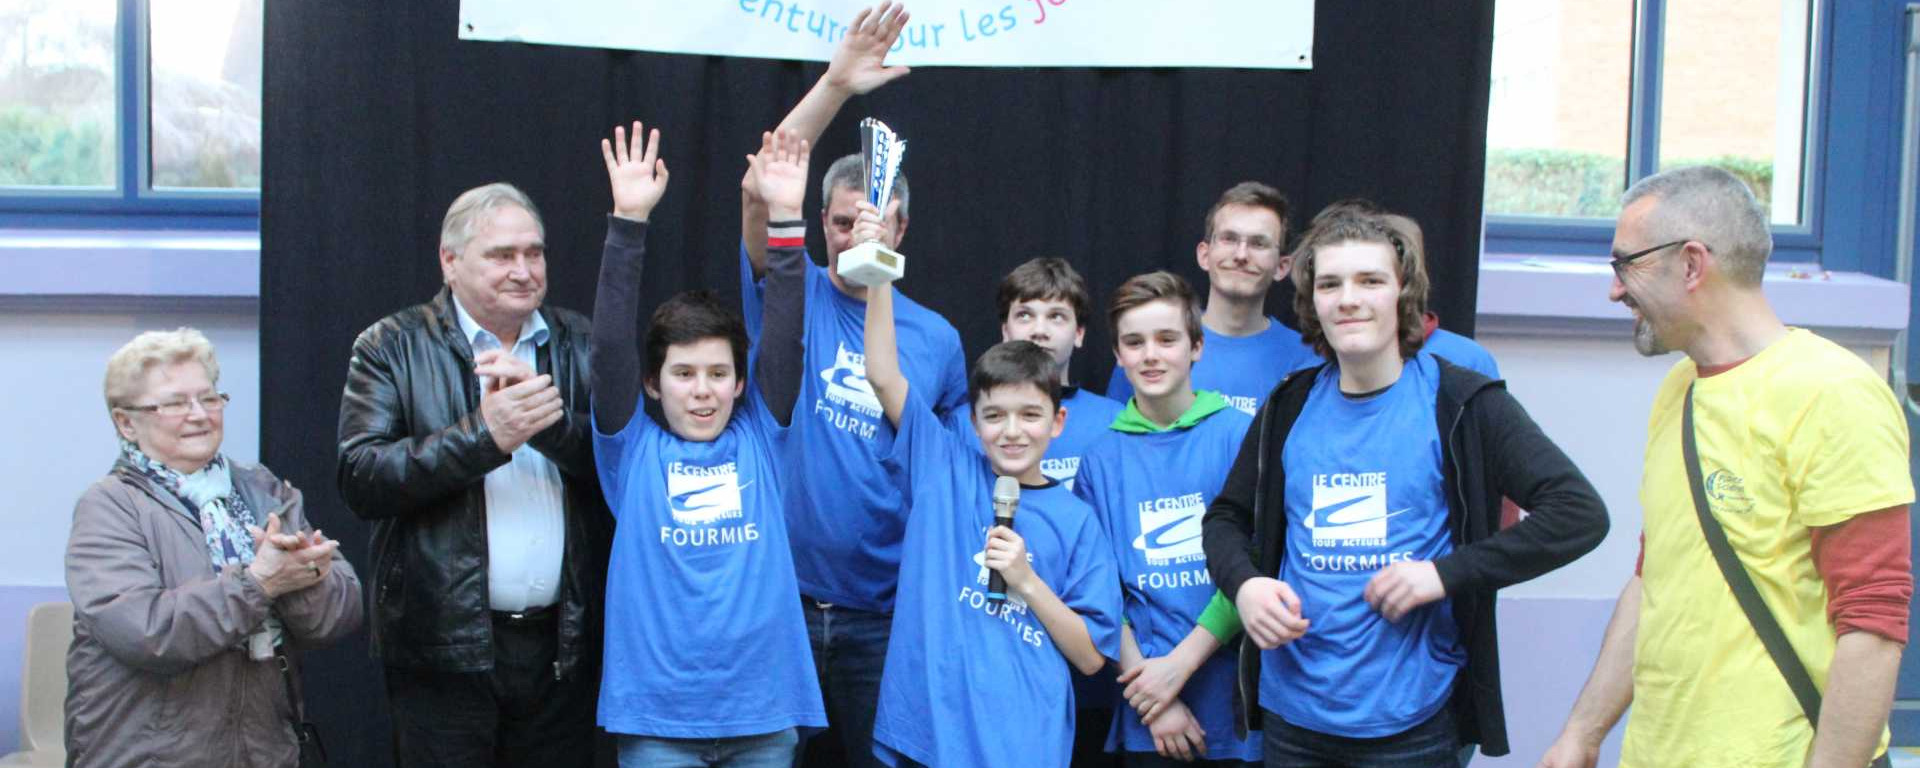 Les 16 et 17 mars, la Ville de Bully-les-Mines a accueilli les trophées de Robotique. L’équipe fourmisienne s’est classée deuxième.